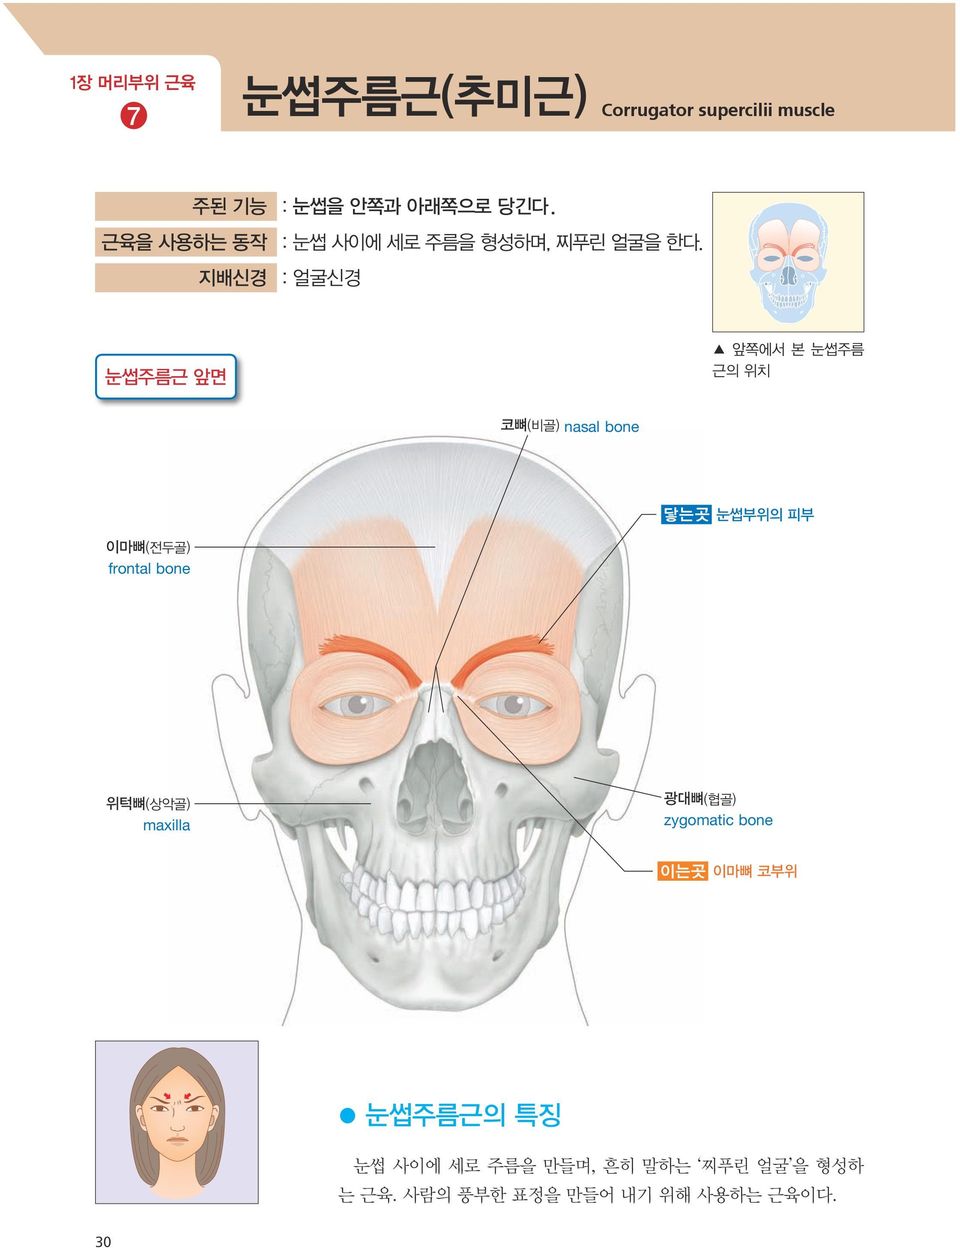 지배신경 : 얼굴신경 눈썹주름근 앞면 앞쪽에서 본 눈썹주름 근의 위치 코뼈(비골) nasal bone 닿는곳 눈썹부위의 피부 이마뼈(전두골)